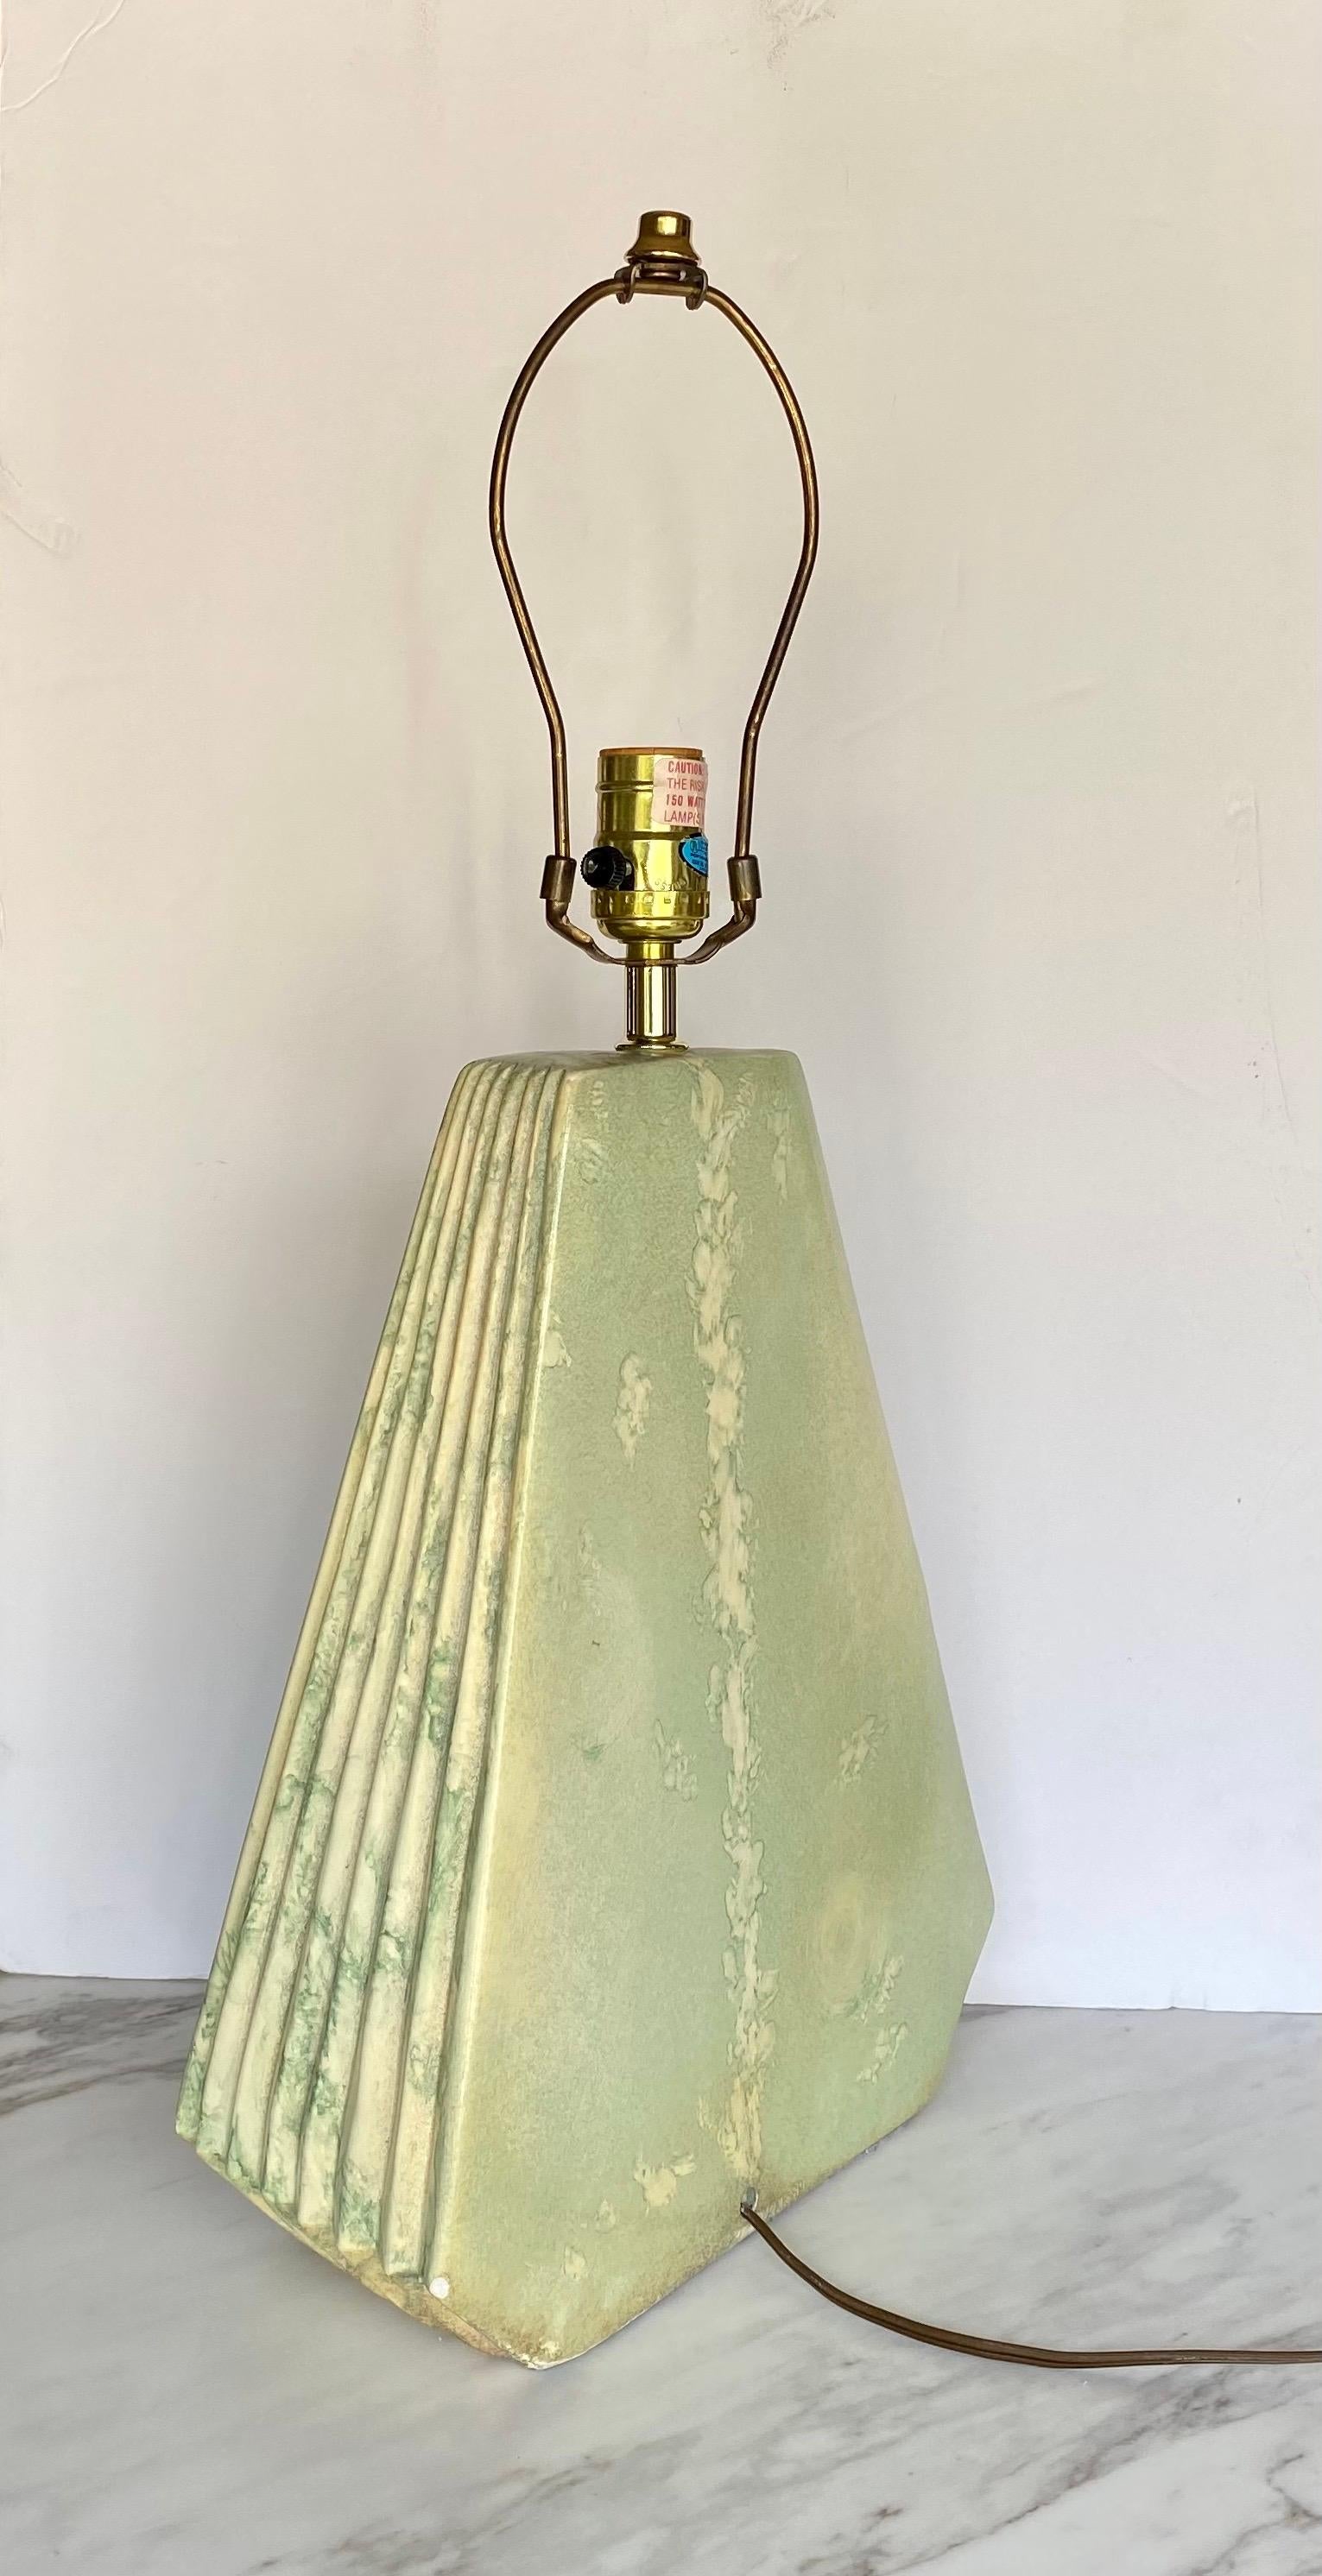 Lampe de table géométrique en plâtre de style moderne du milieu du siècle, avec des détails nervurés ou plissés. Cette lampe sculpturale de forme pyramidale triangulaire présente une magnifique glaçure mate vert pâle et beige. Abat-jour non inclus.